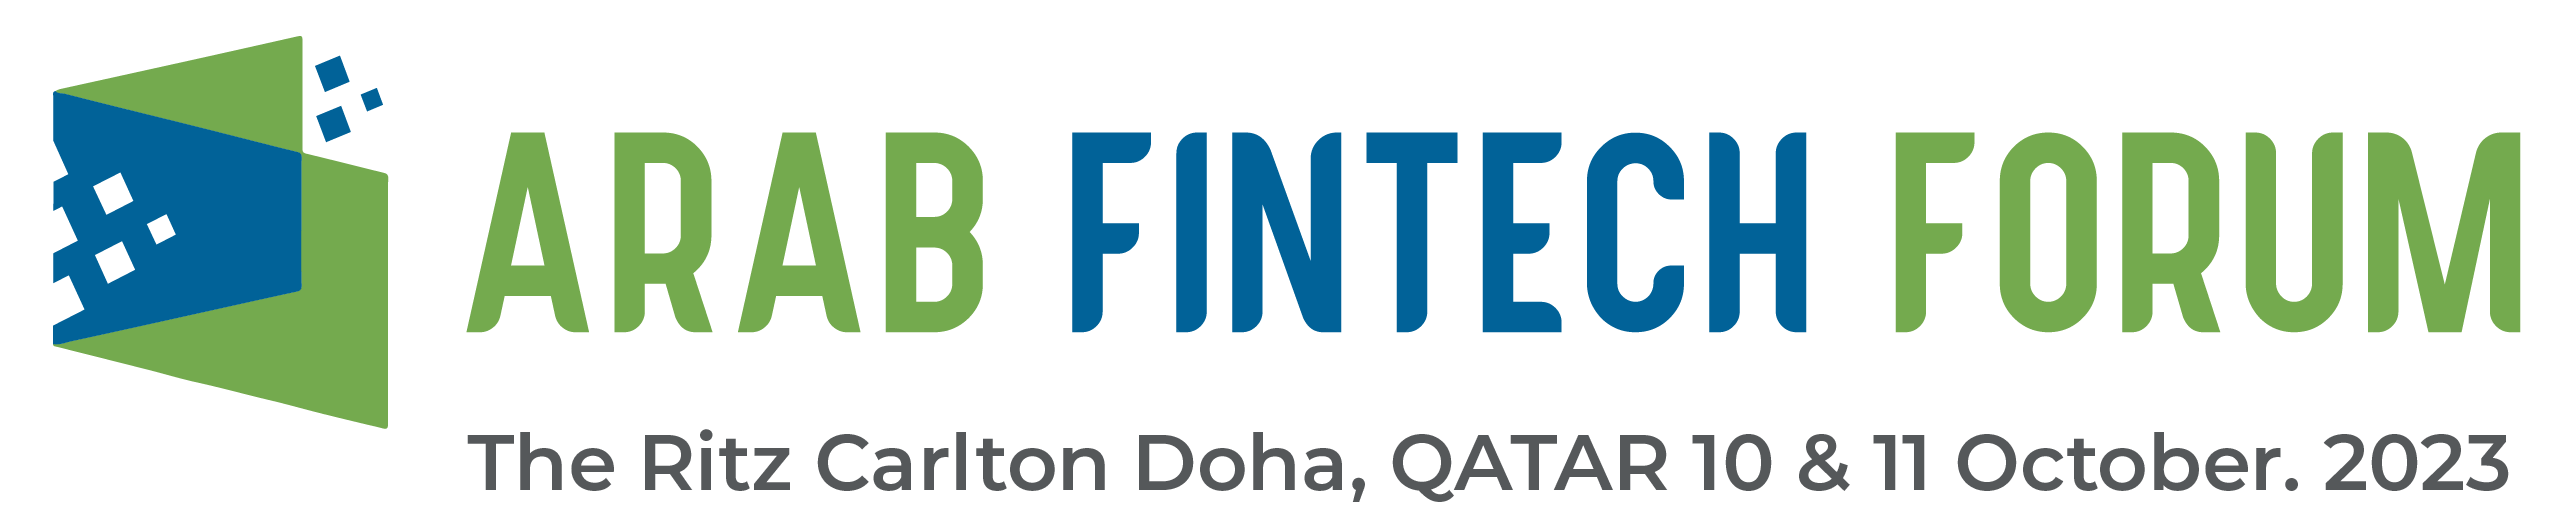 Arab Fintech Forum – Edition 2023 Qatar